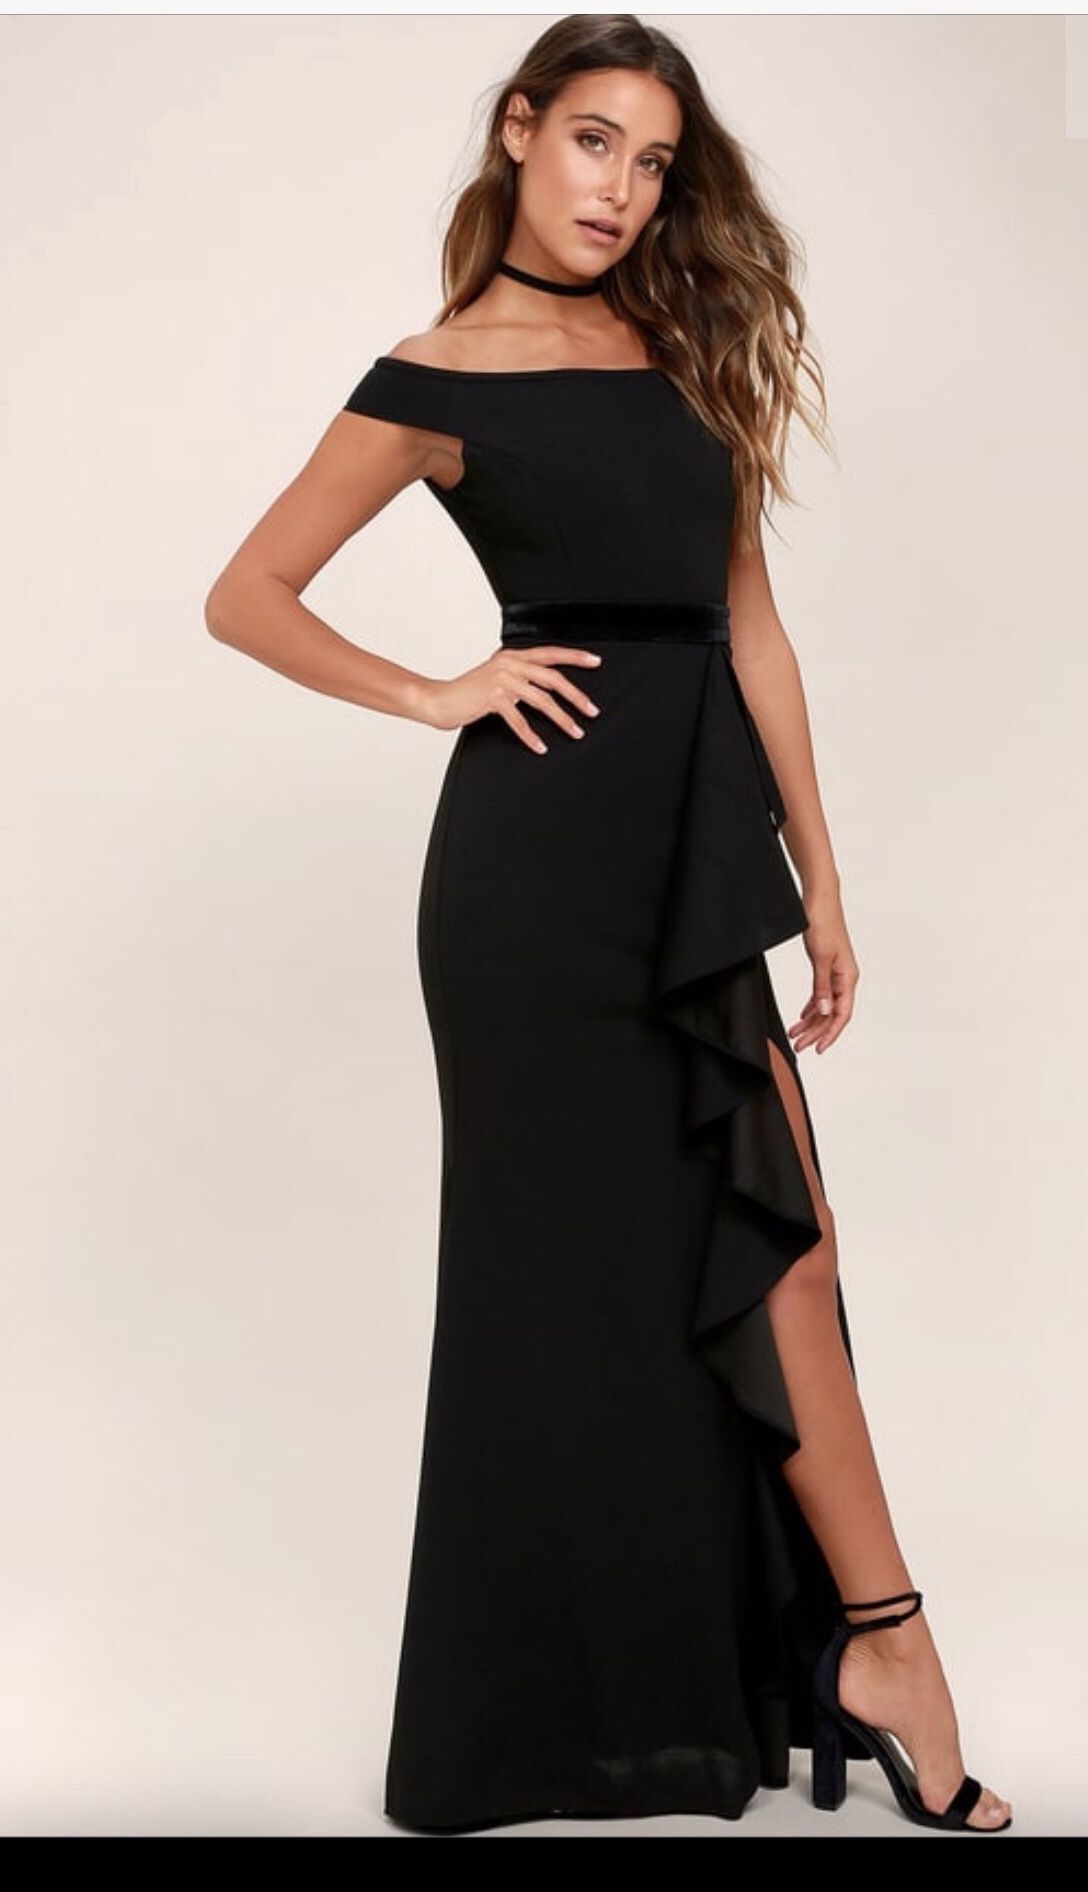 Cute black dress, size 6(runs a bit small)